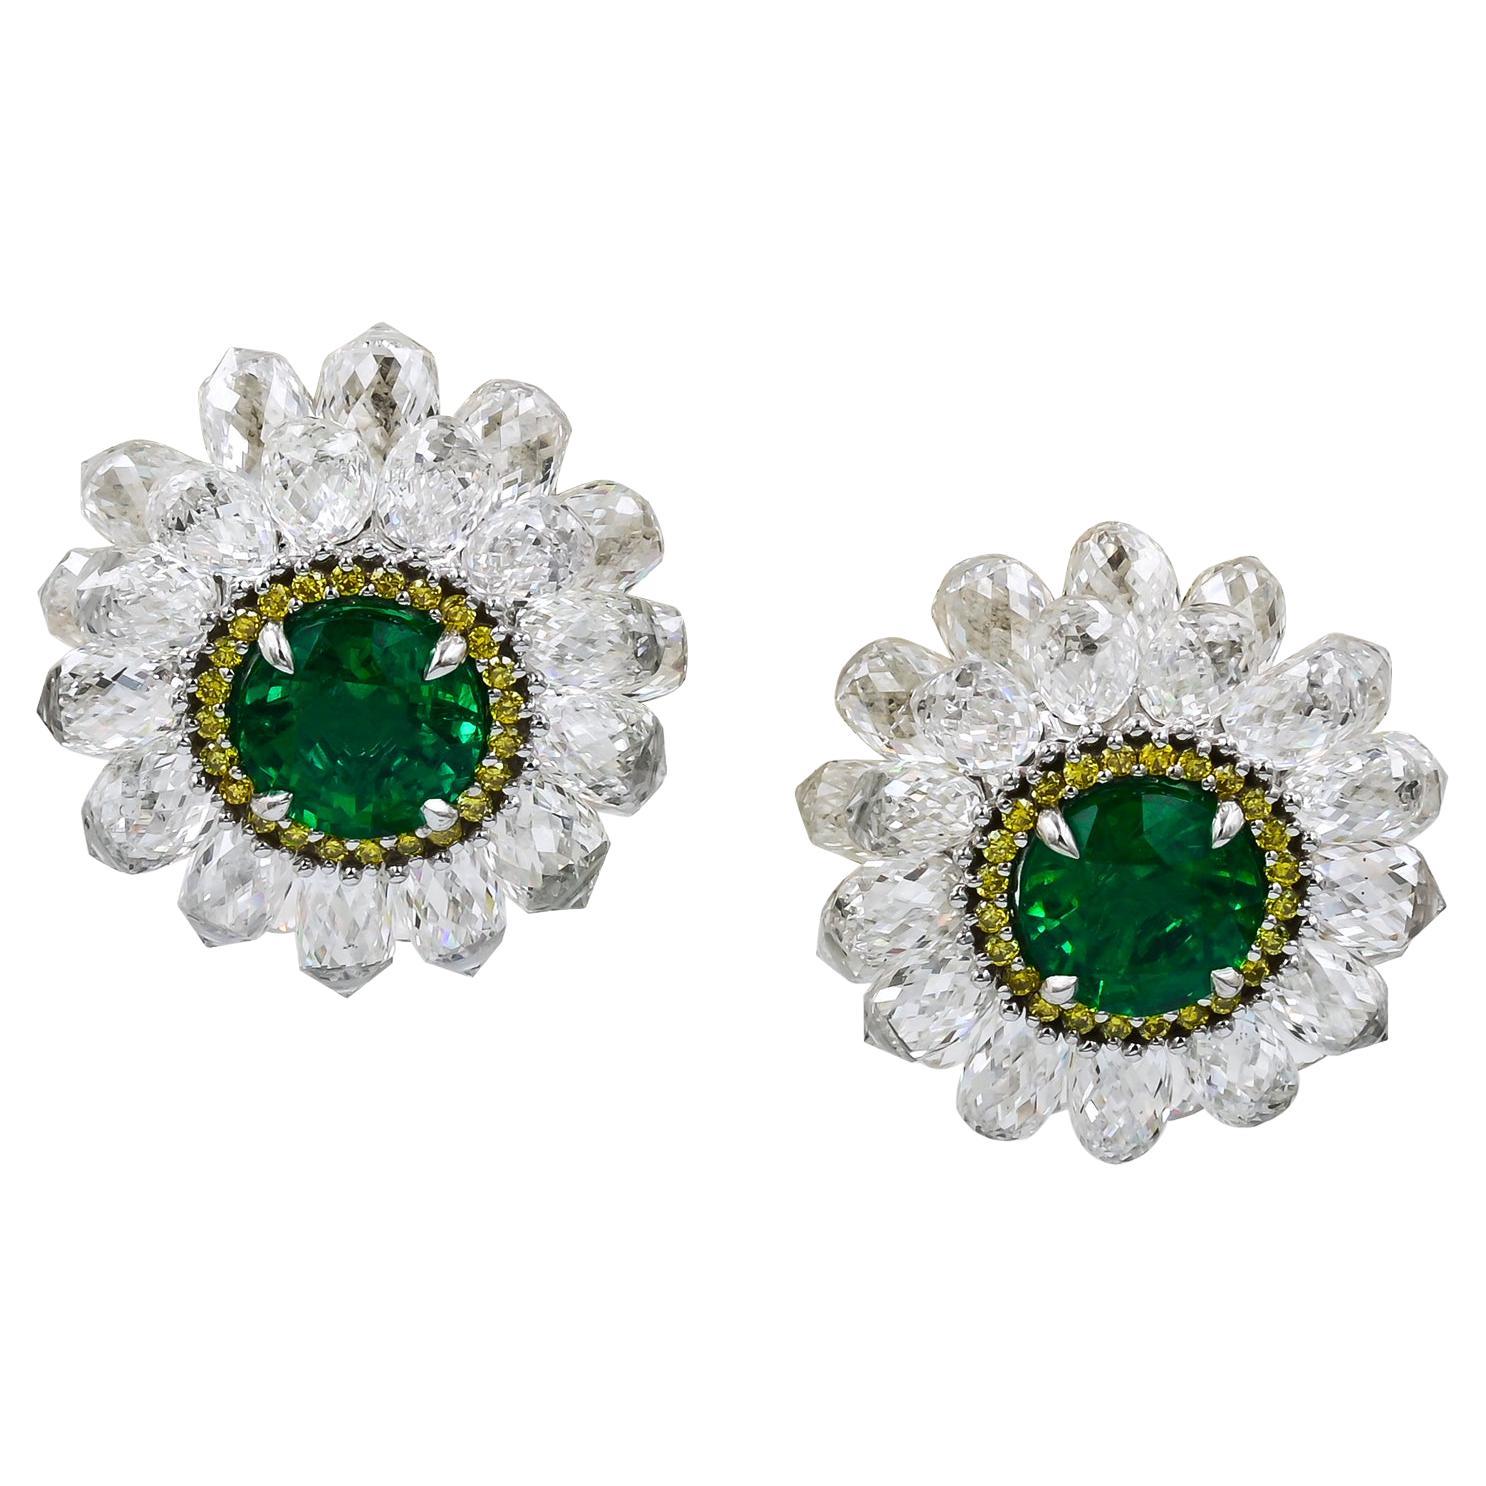 Certified 0.96 & 0.97 Carat Zambian Emerald Diamond Earrings For Sale